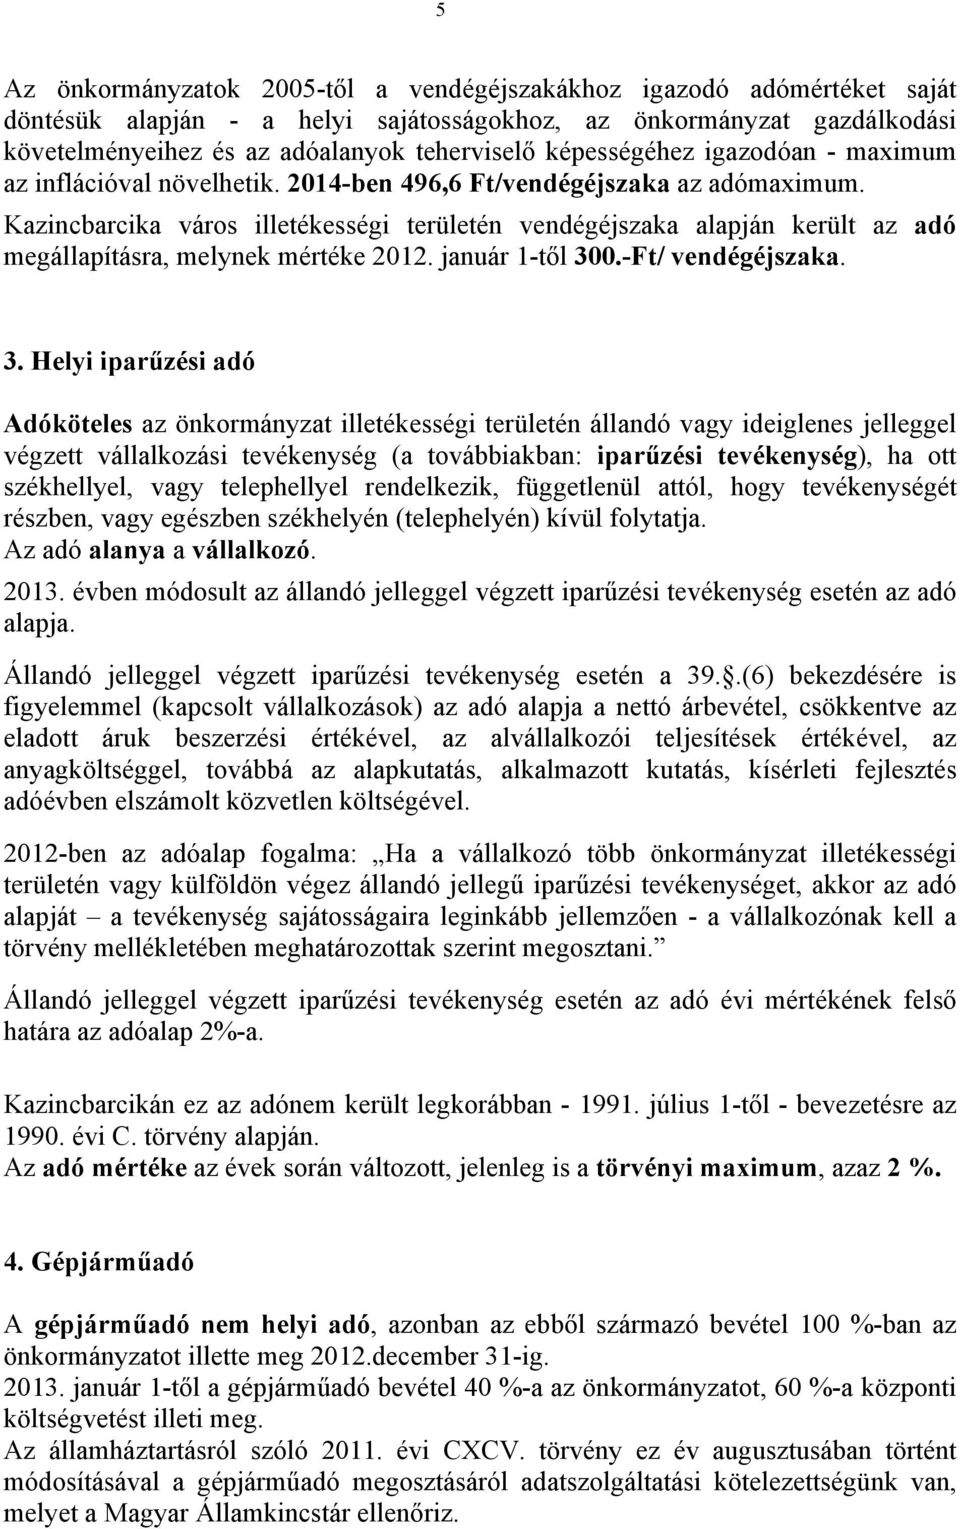 Kazincbarcika város illetékességi területén vendégéjszaka alapján került az adó megállapításra, melynek mértéke 2012. január 1-től 30